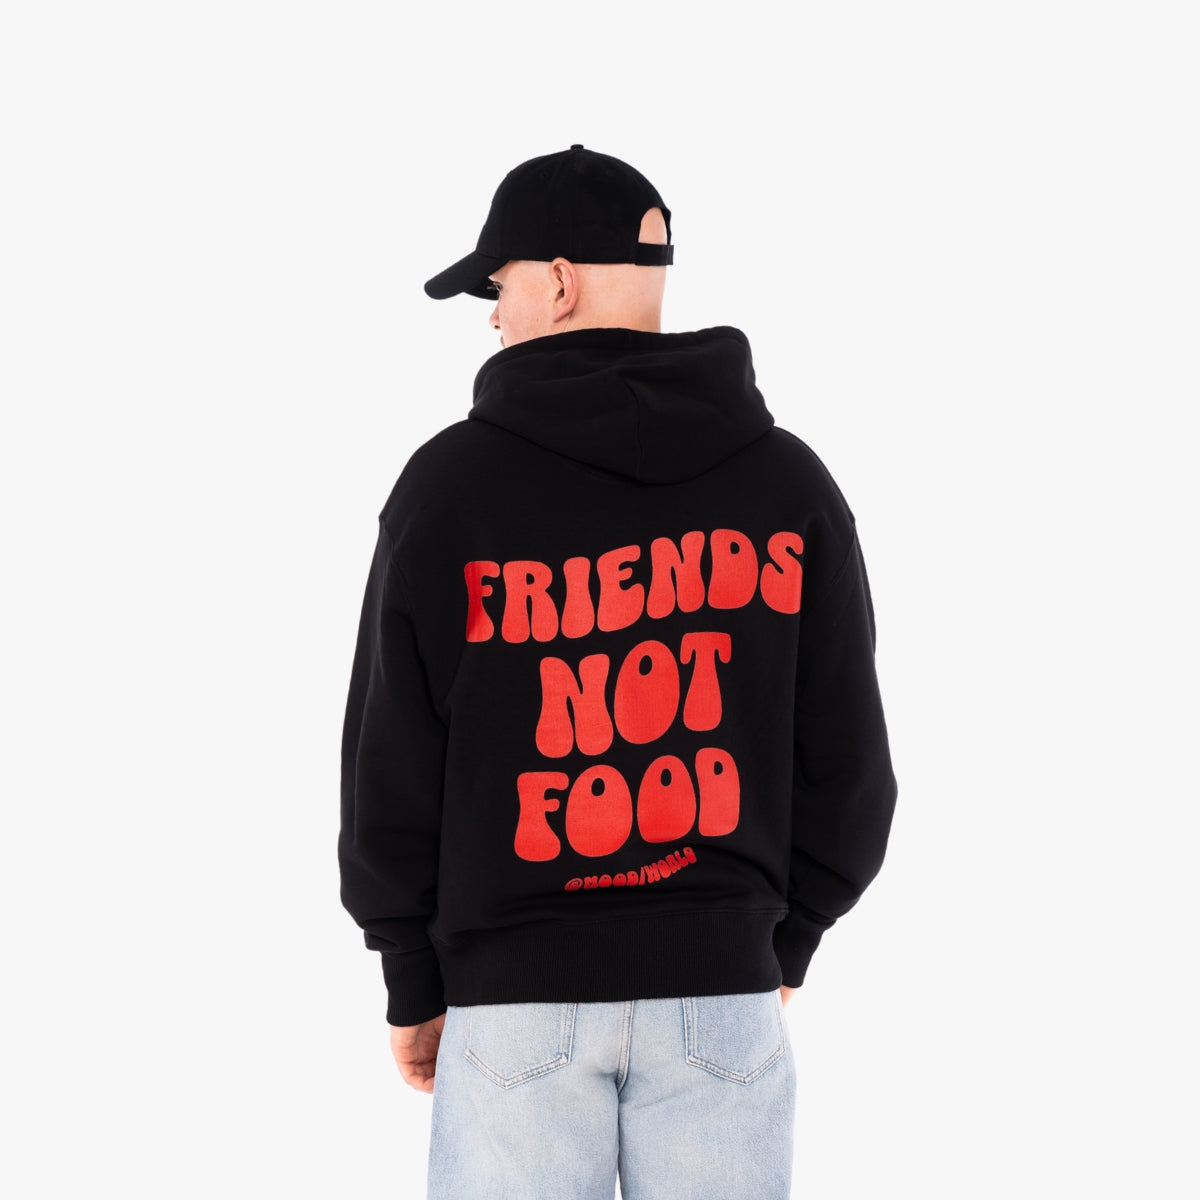 'FRIENDS NOT FOOD Wave' Organic Oversize Hoodie in der Farbe Black als Back Nahaufnahme getragen von einem männlichen Model